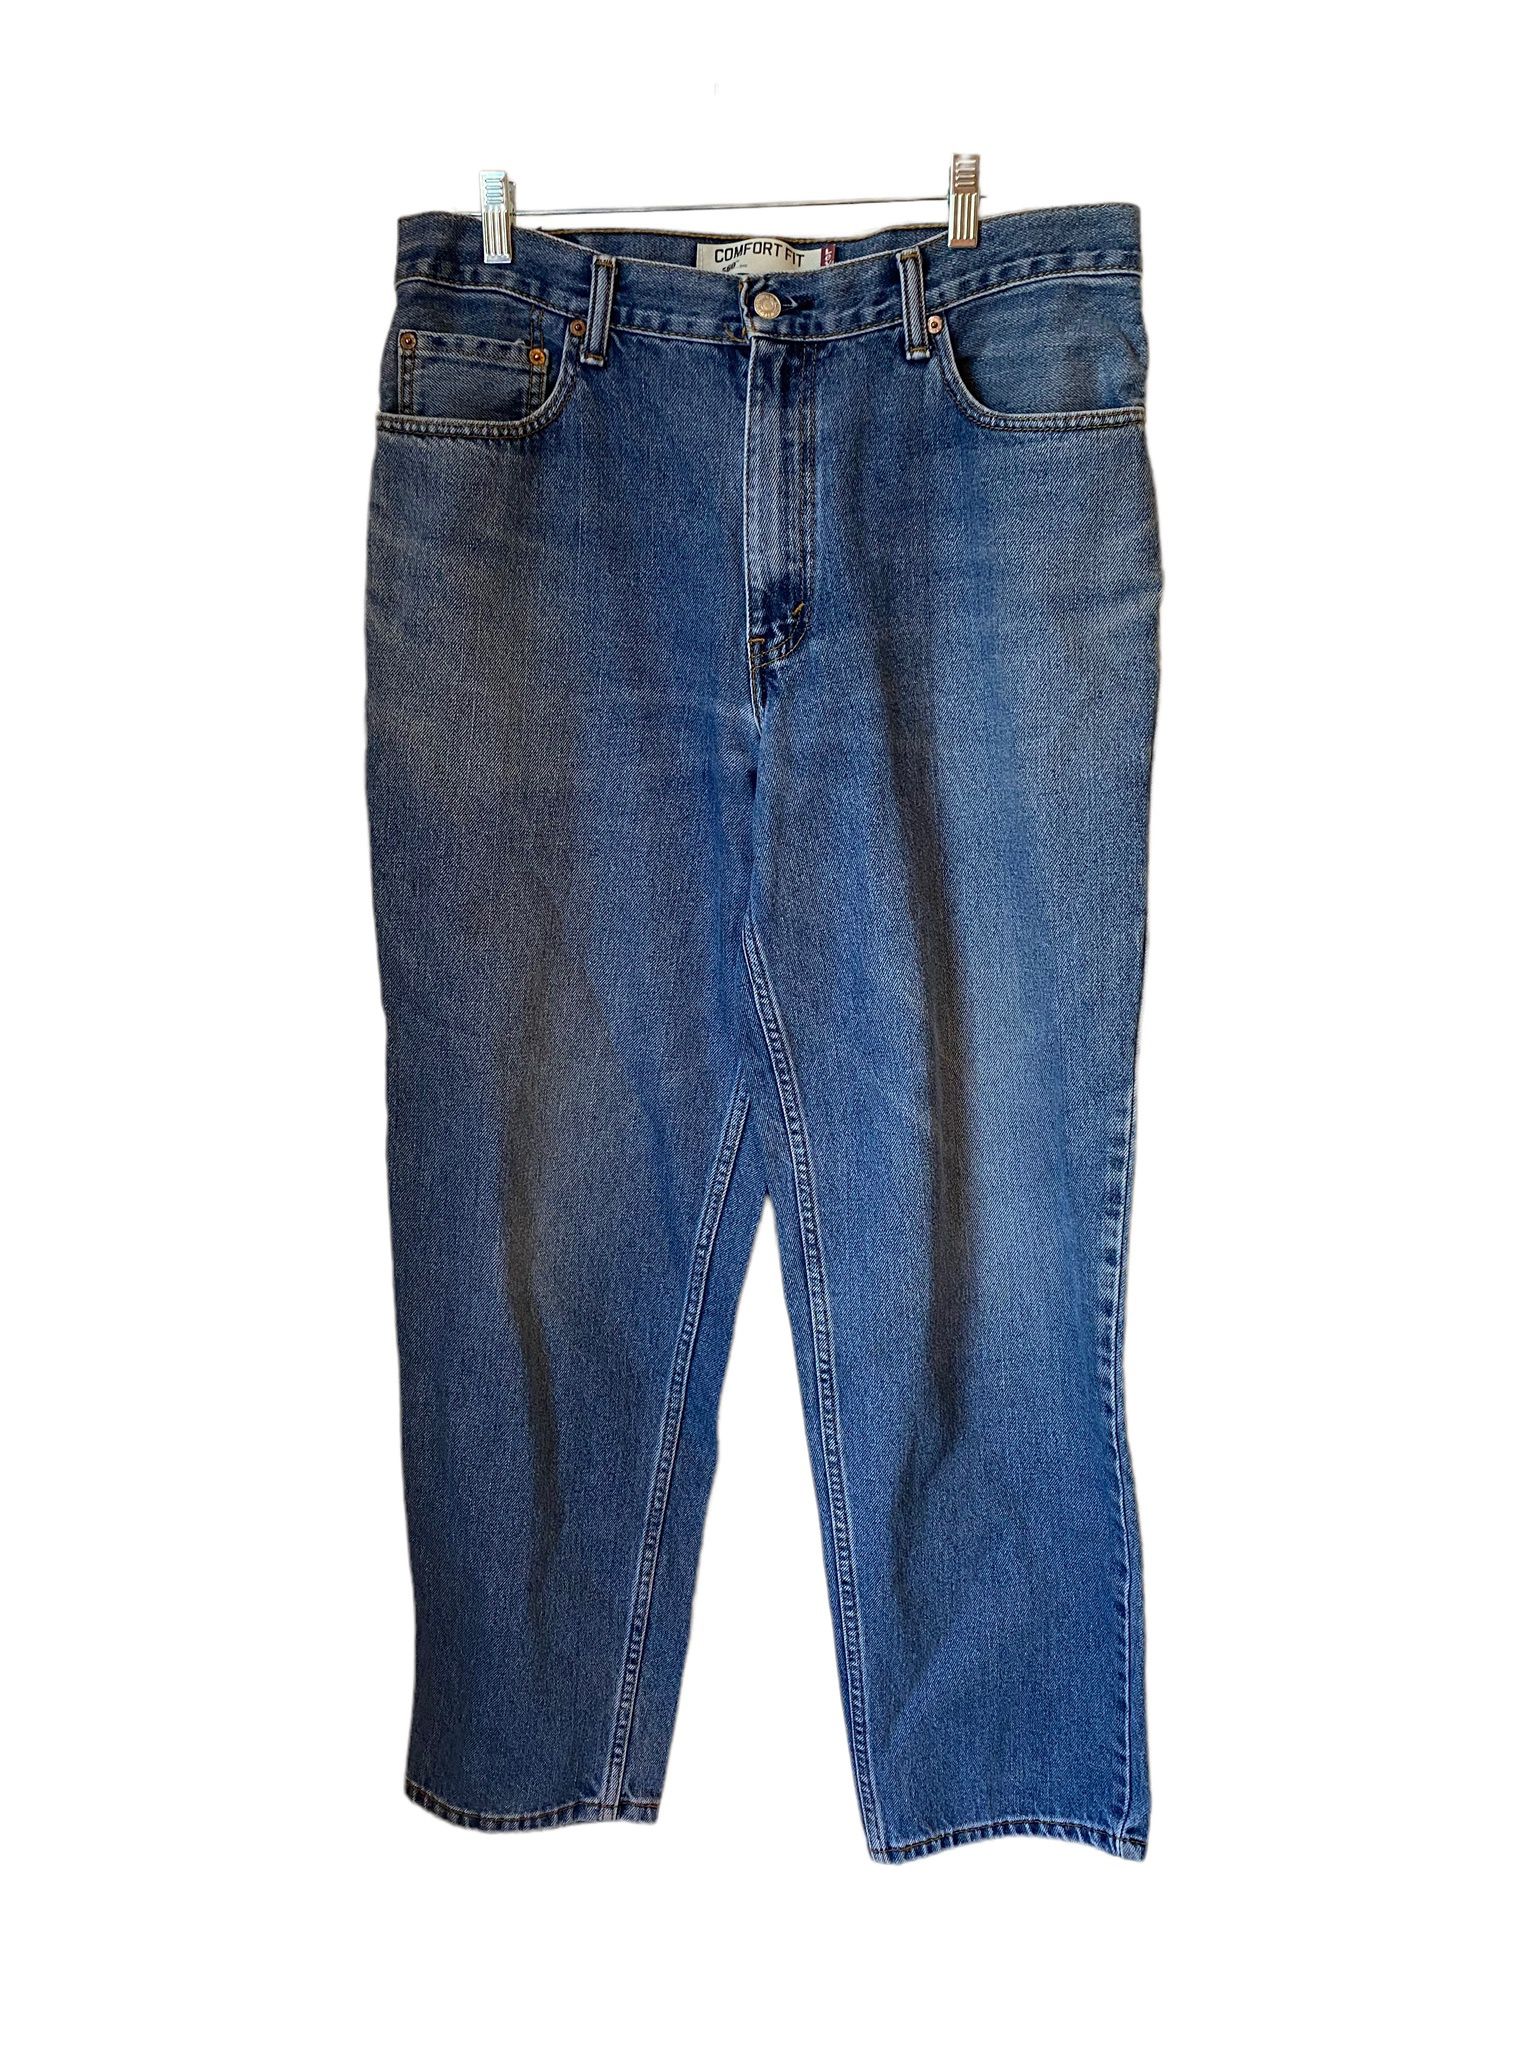 Men’s Levi’s 560 blue jeans size 34X32